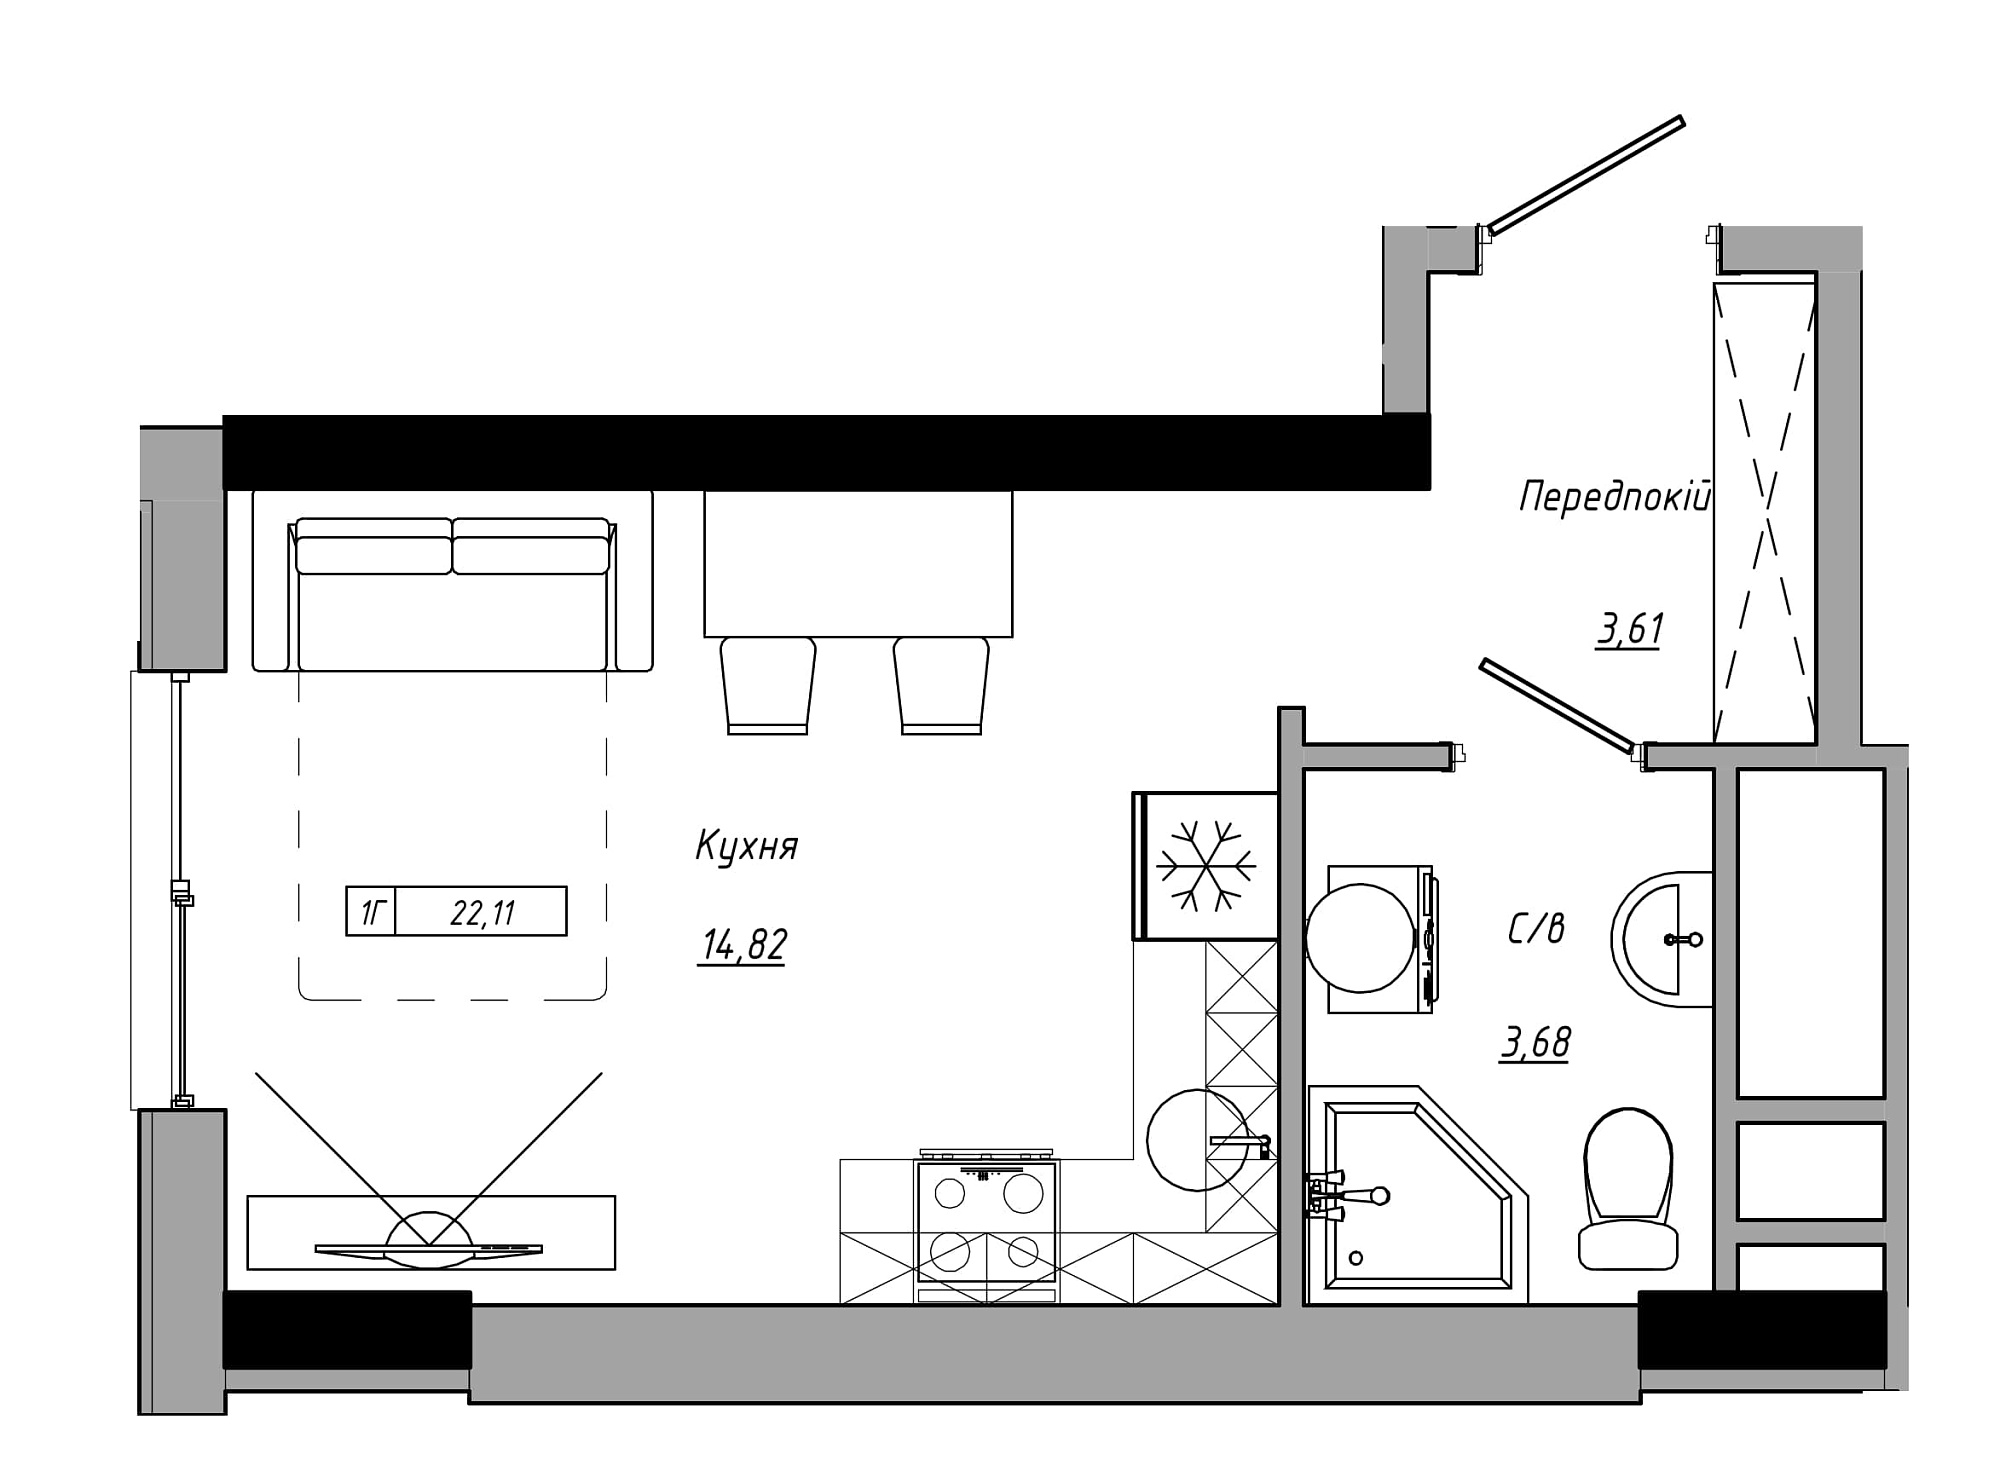 Планування Smart-квартира площею 22.11м2, AB-21-14/00105.